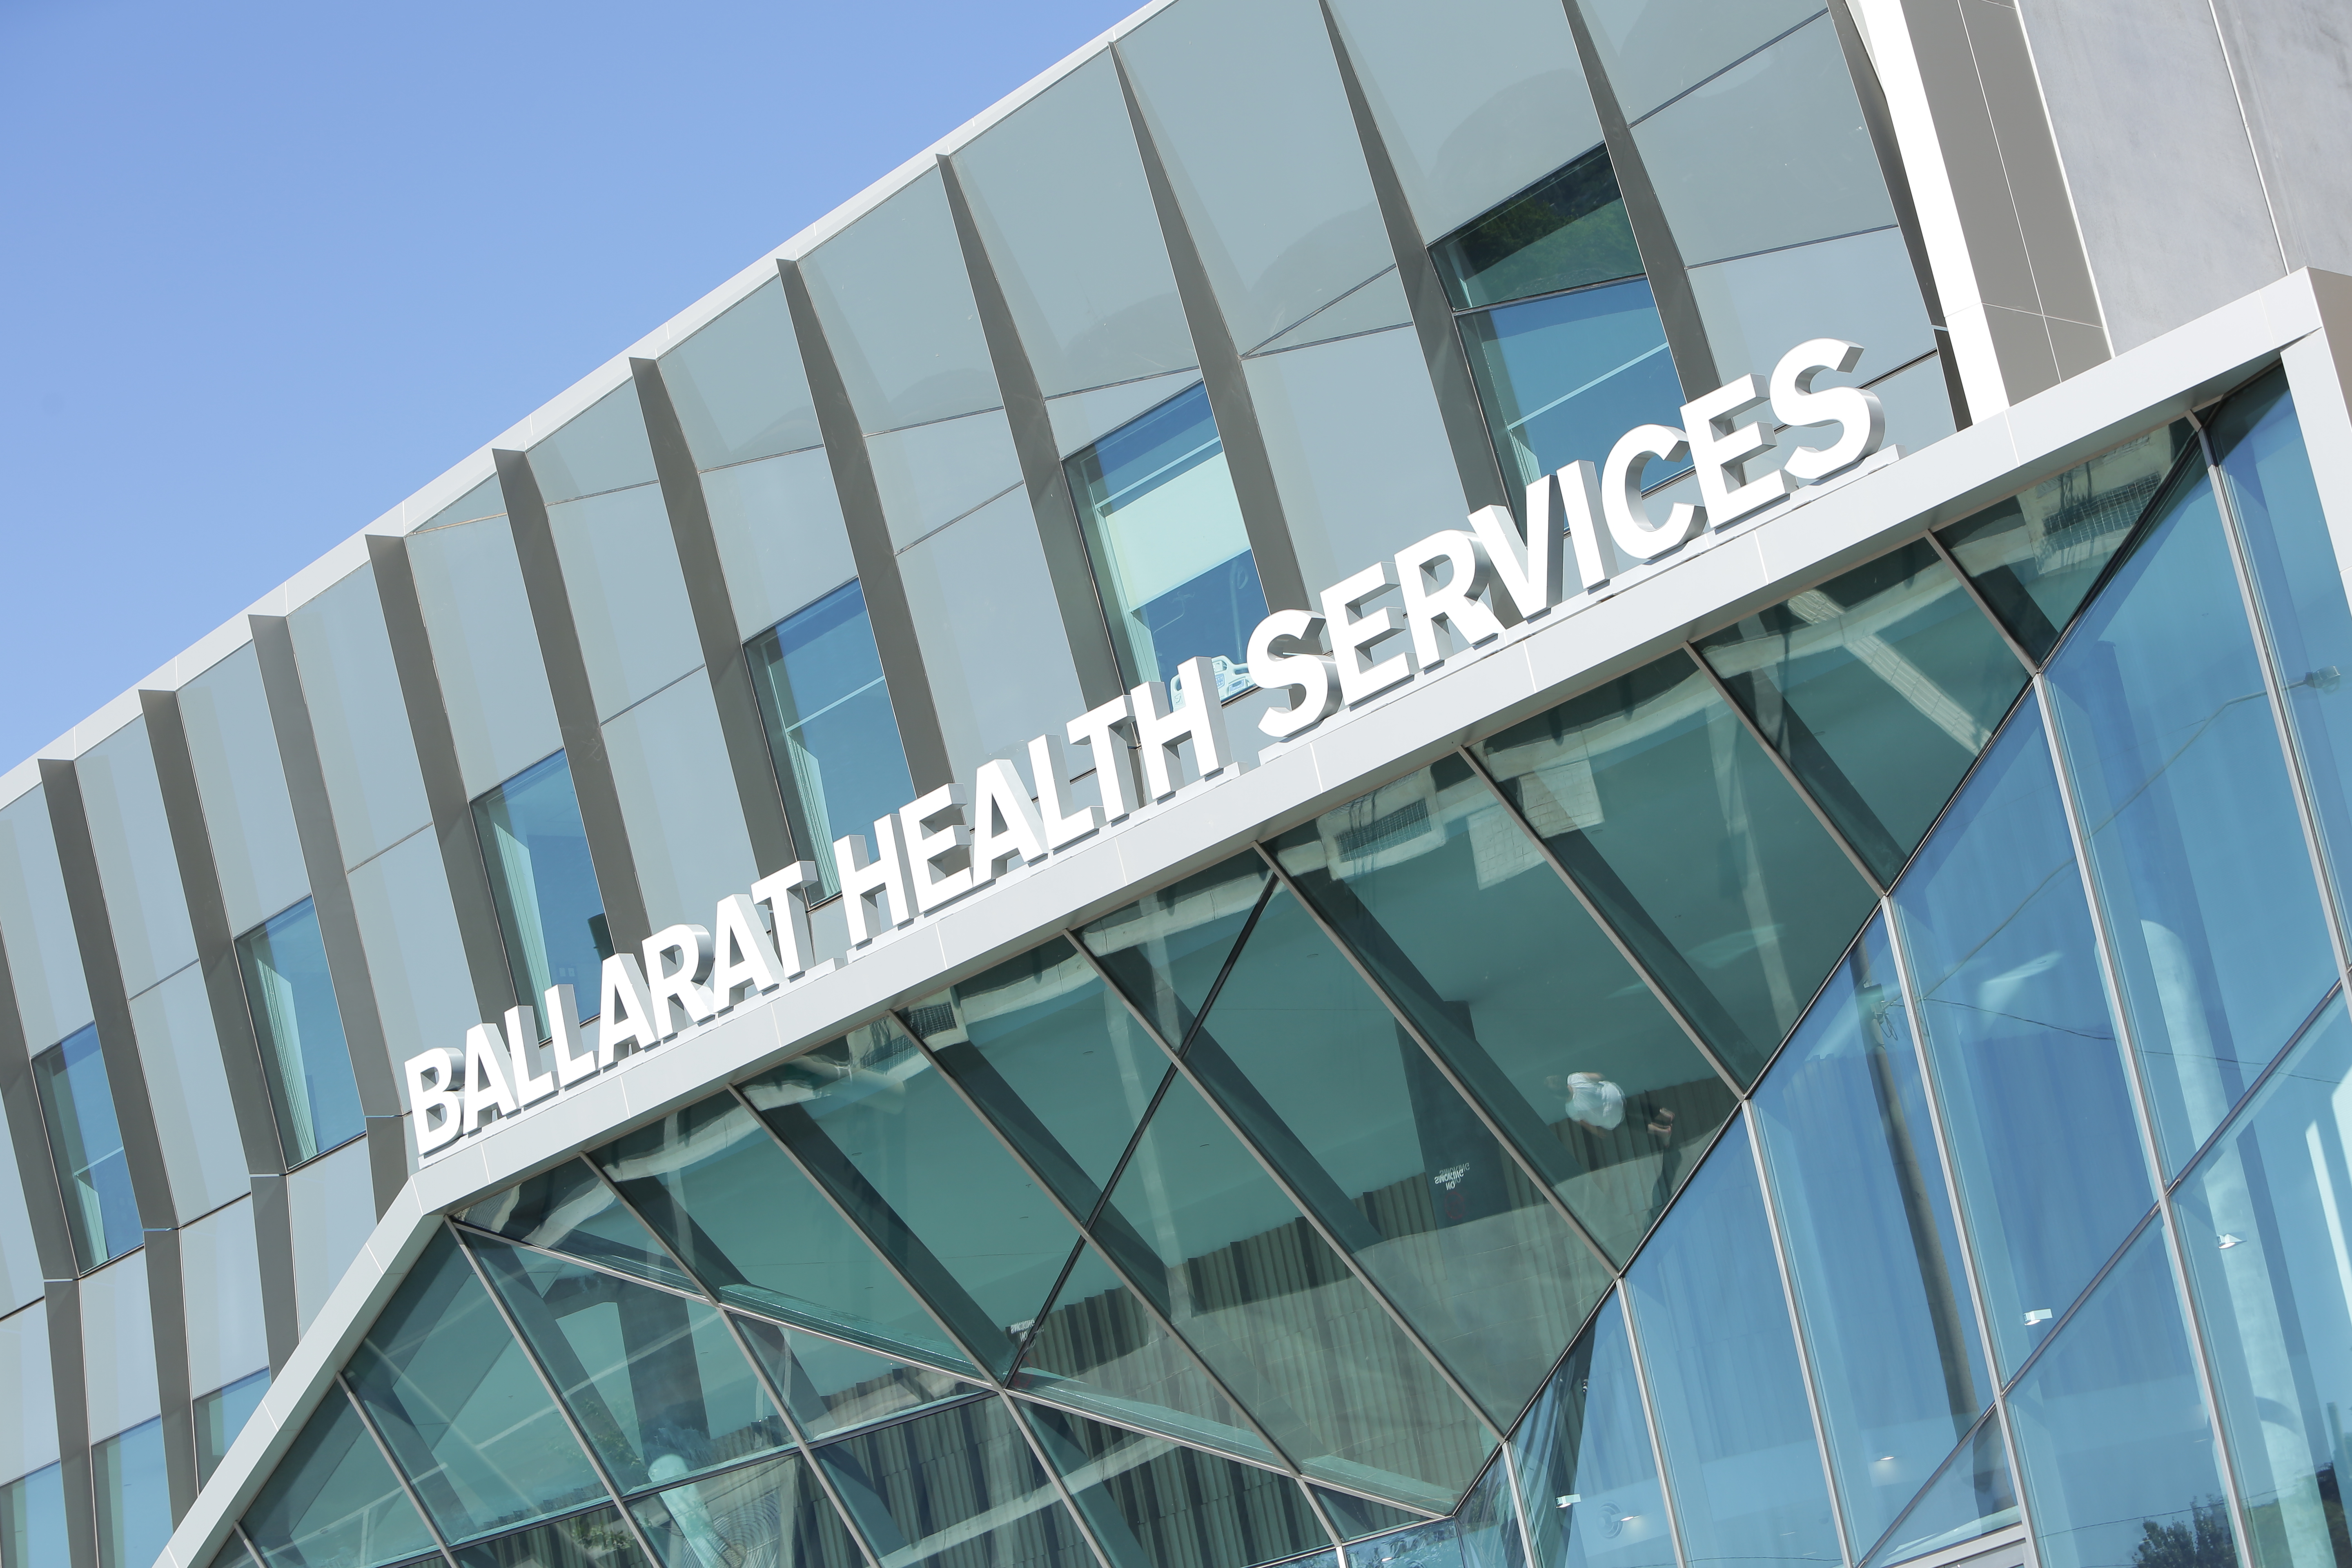 Working at Ballarat Health Service 